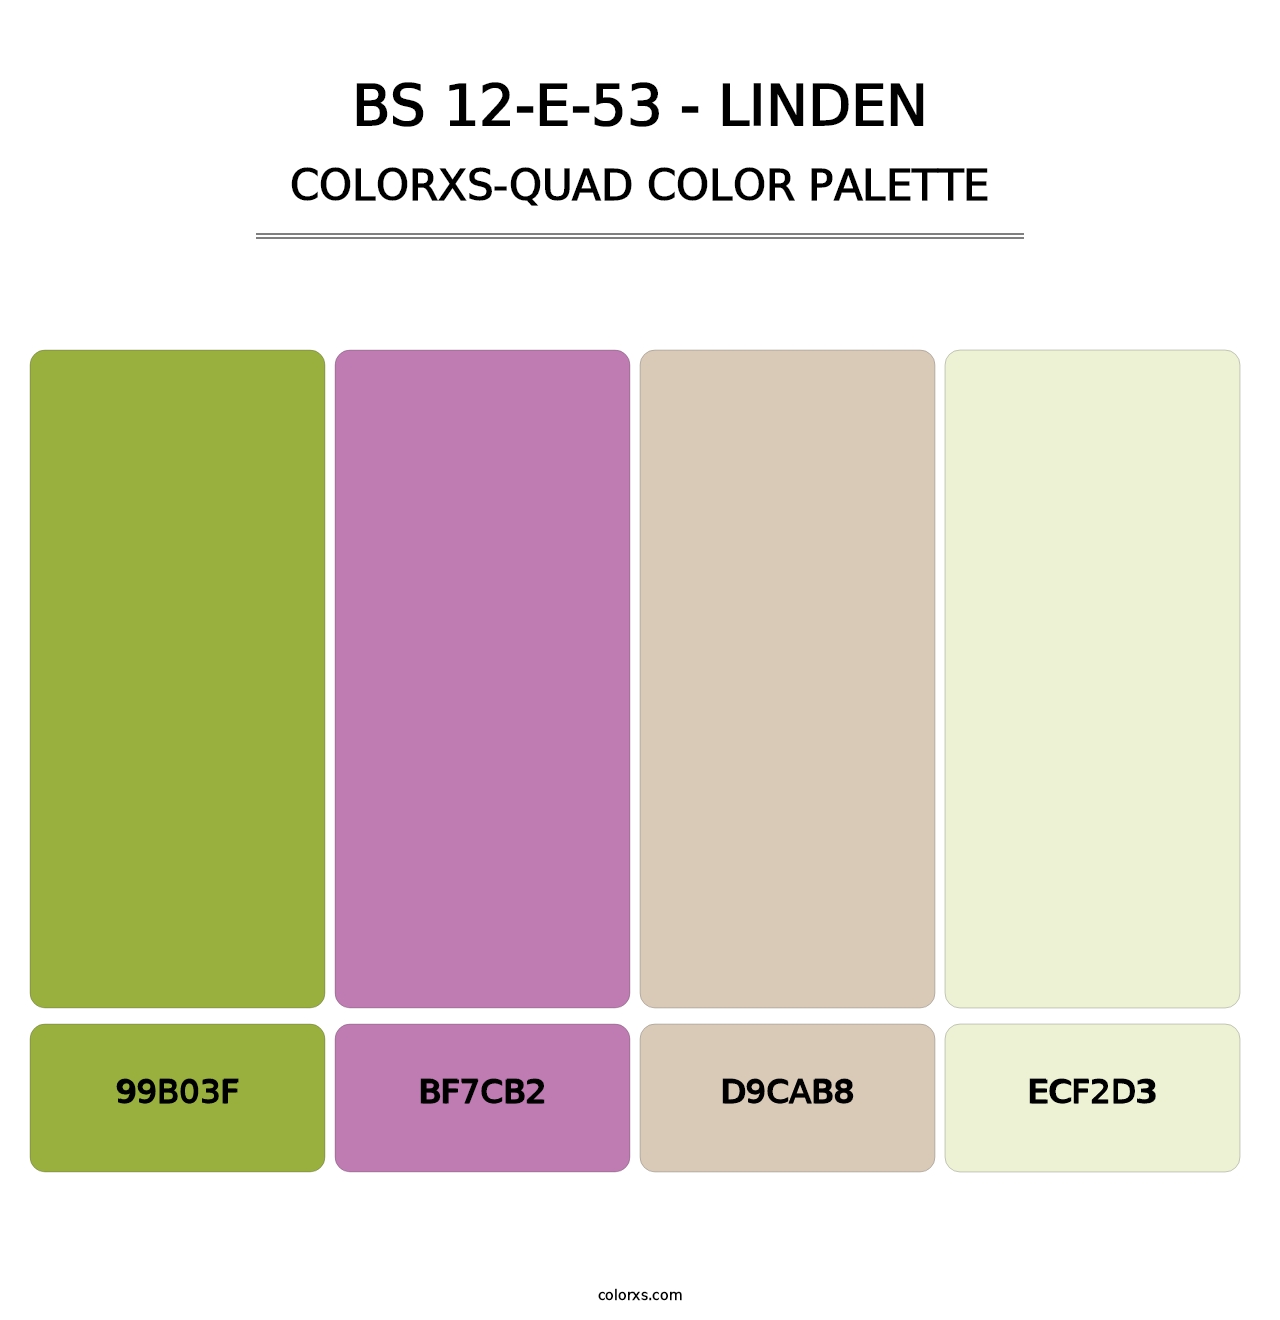 BS 12-E-53 - Linden - Colorxs Quad Palette